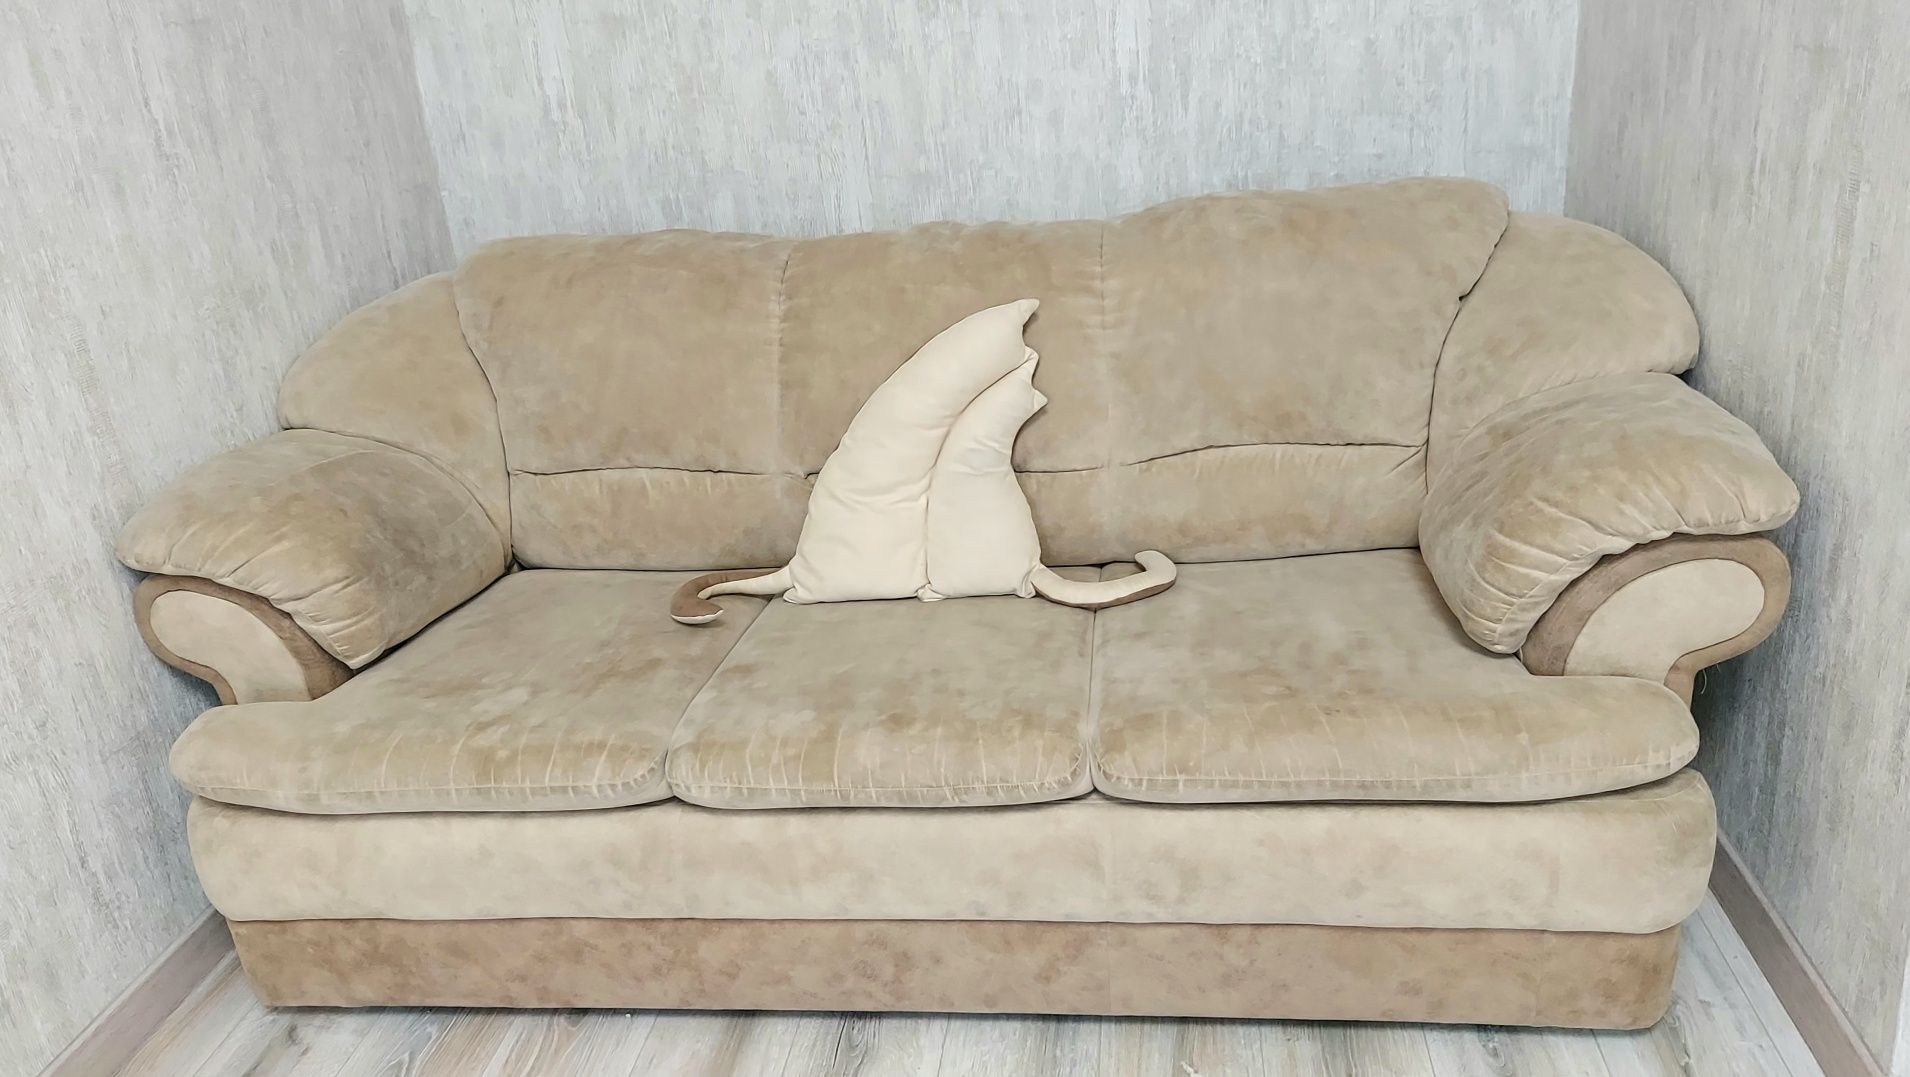 Продам комфортный диван 2,05м×95см.